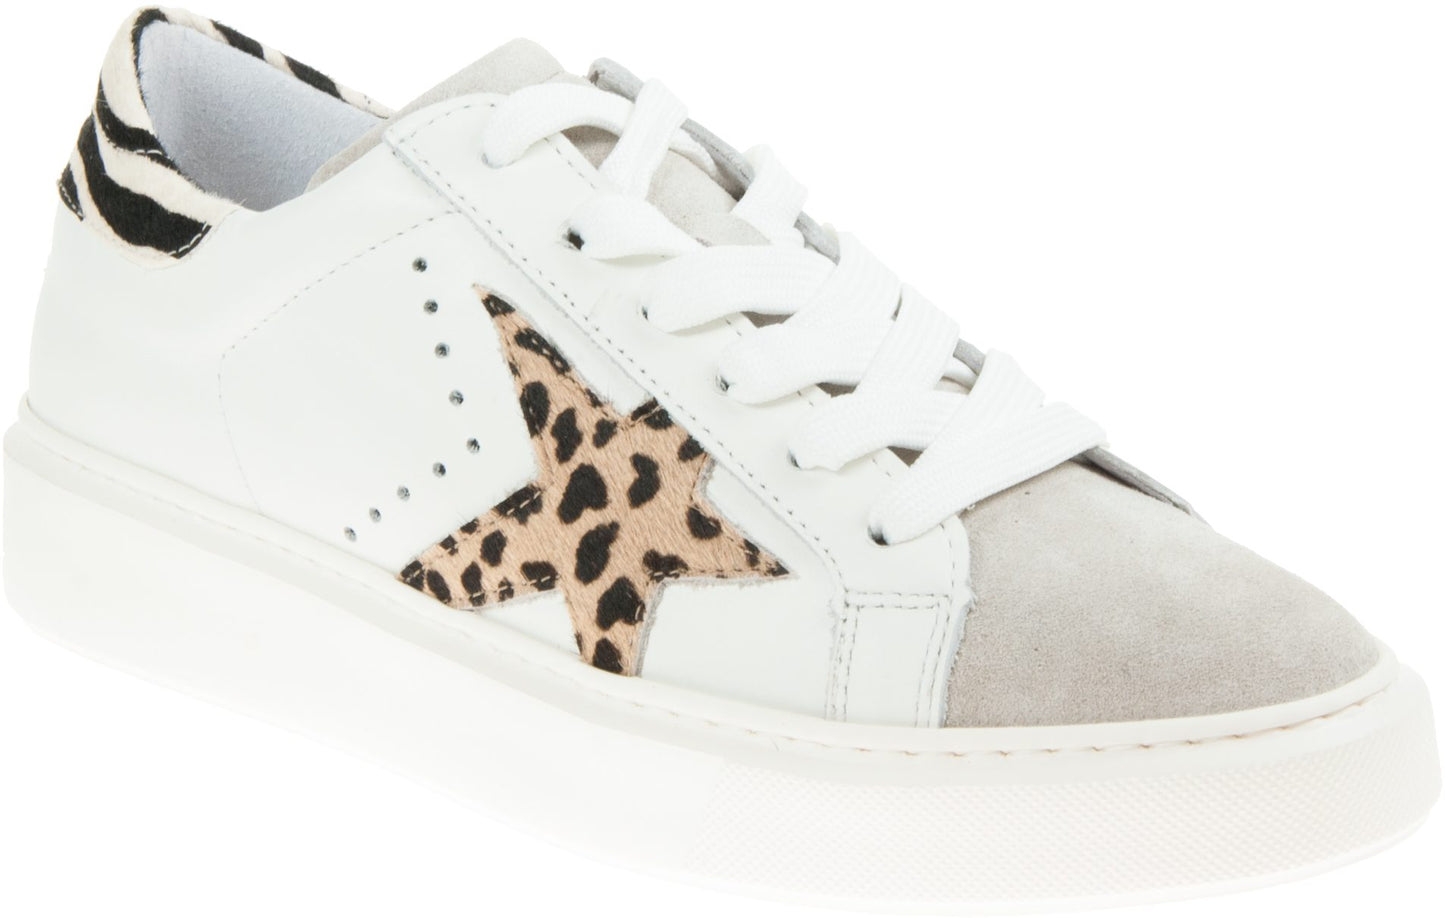 Alpe Women's Tresor 4244 Star Sneakers White Leopard